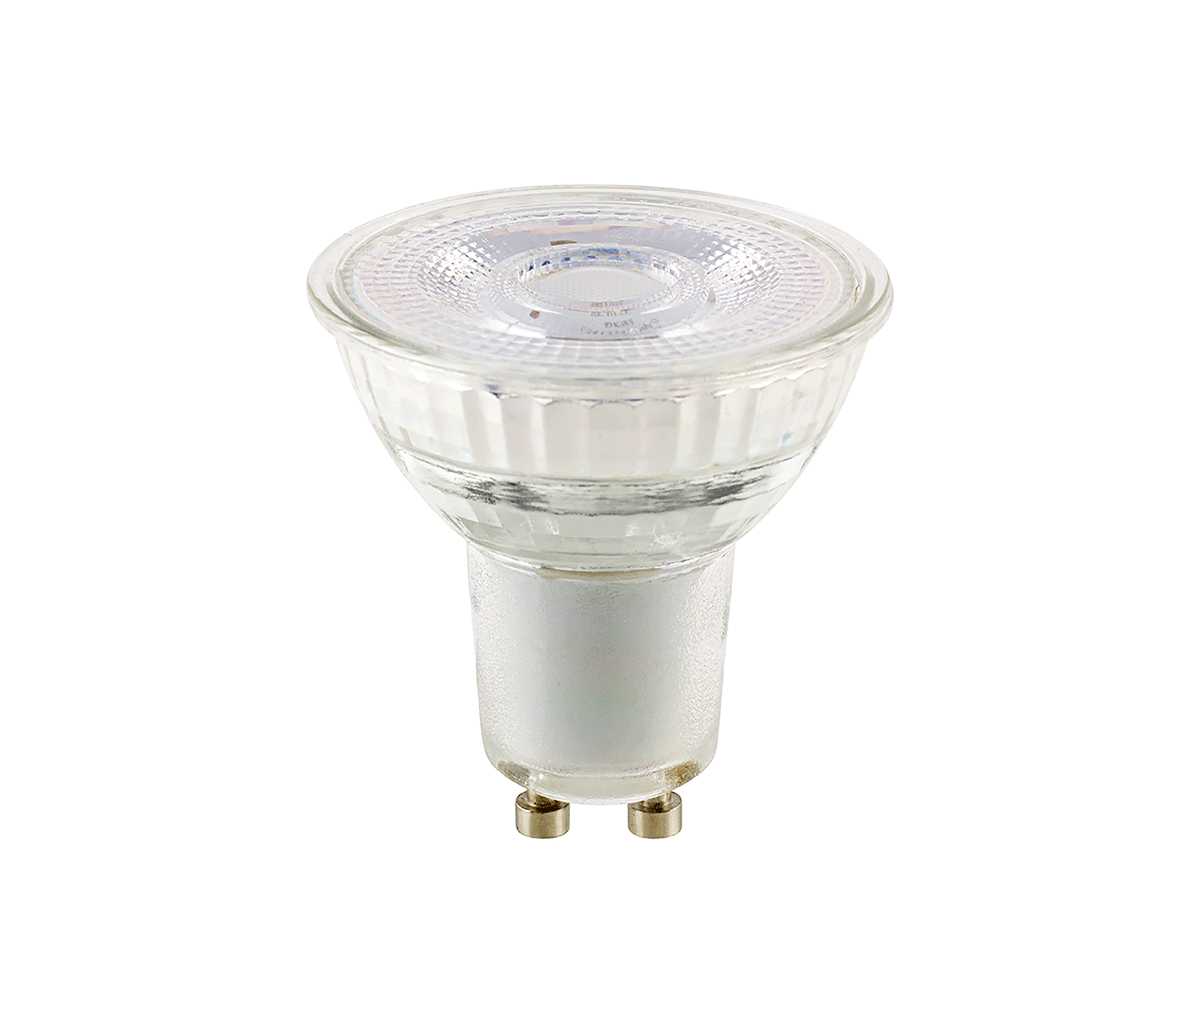 Sigor LED Reflektorlampe Luxar PAR16 4 W GU10